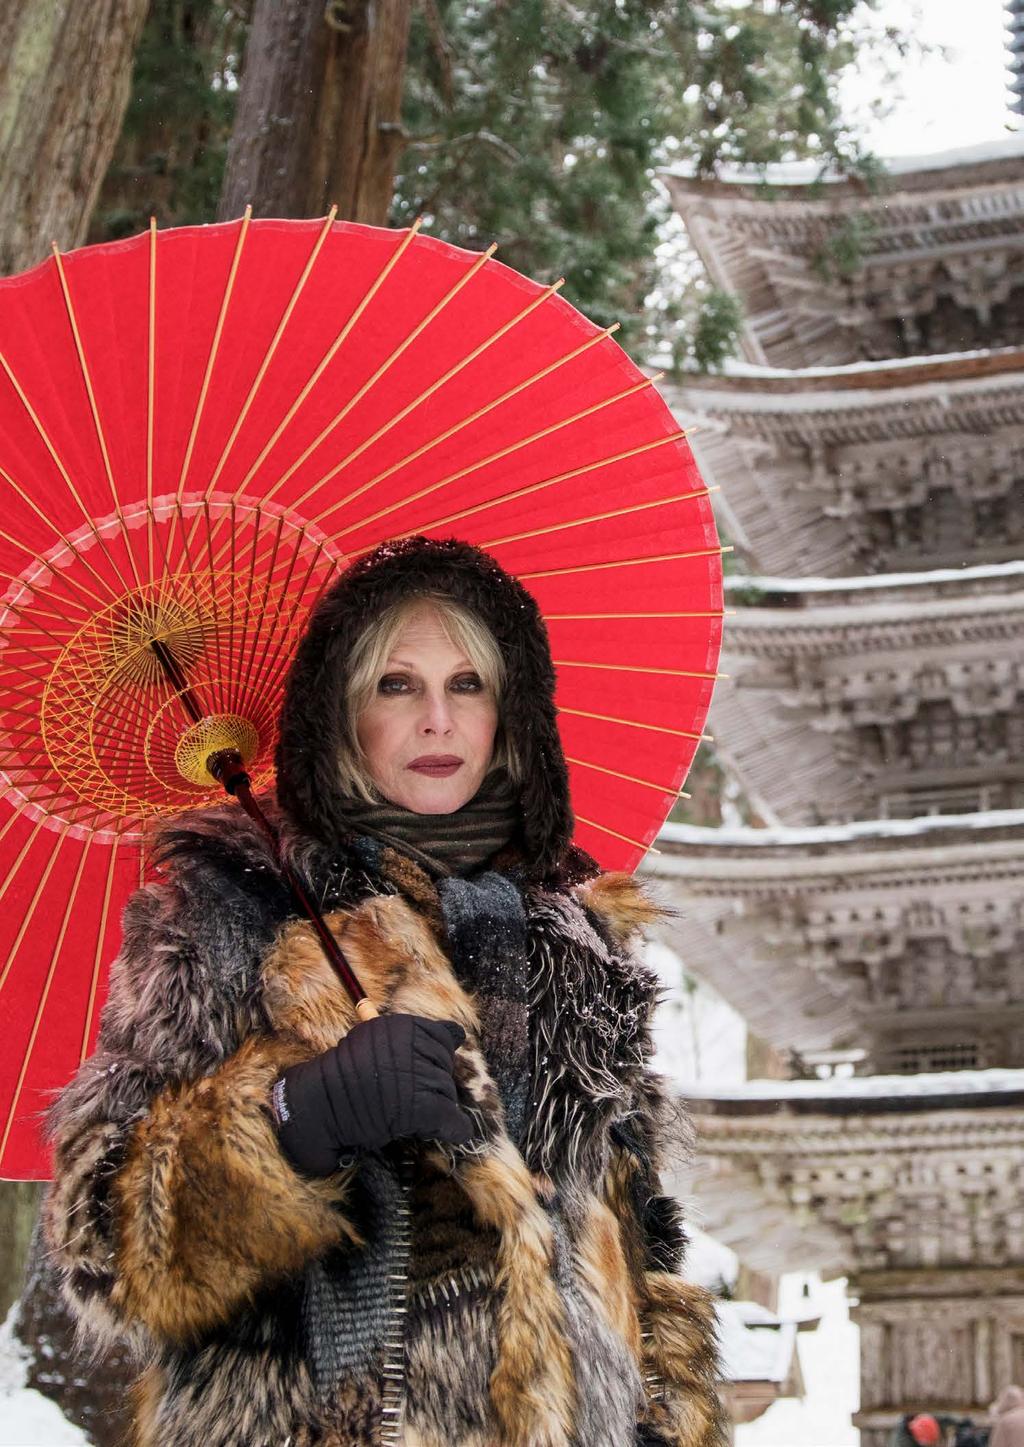 I Joanna Lumley japanka äventyr får tittarna följa henne på rea genom Japan.